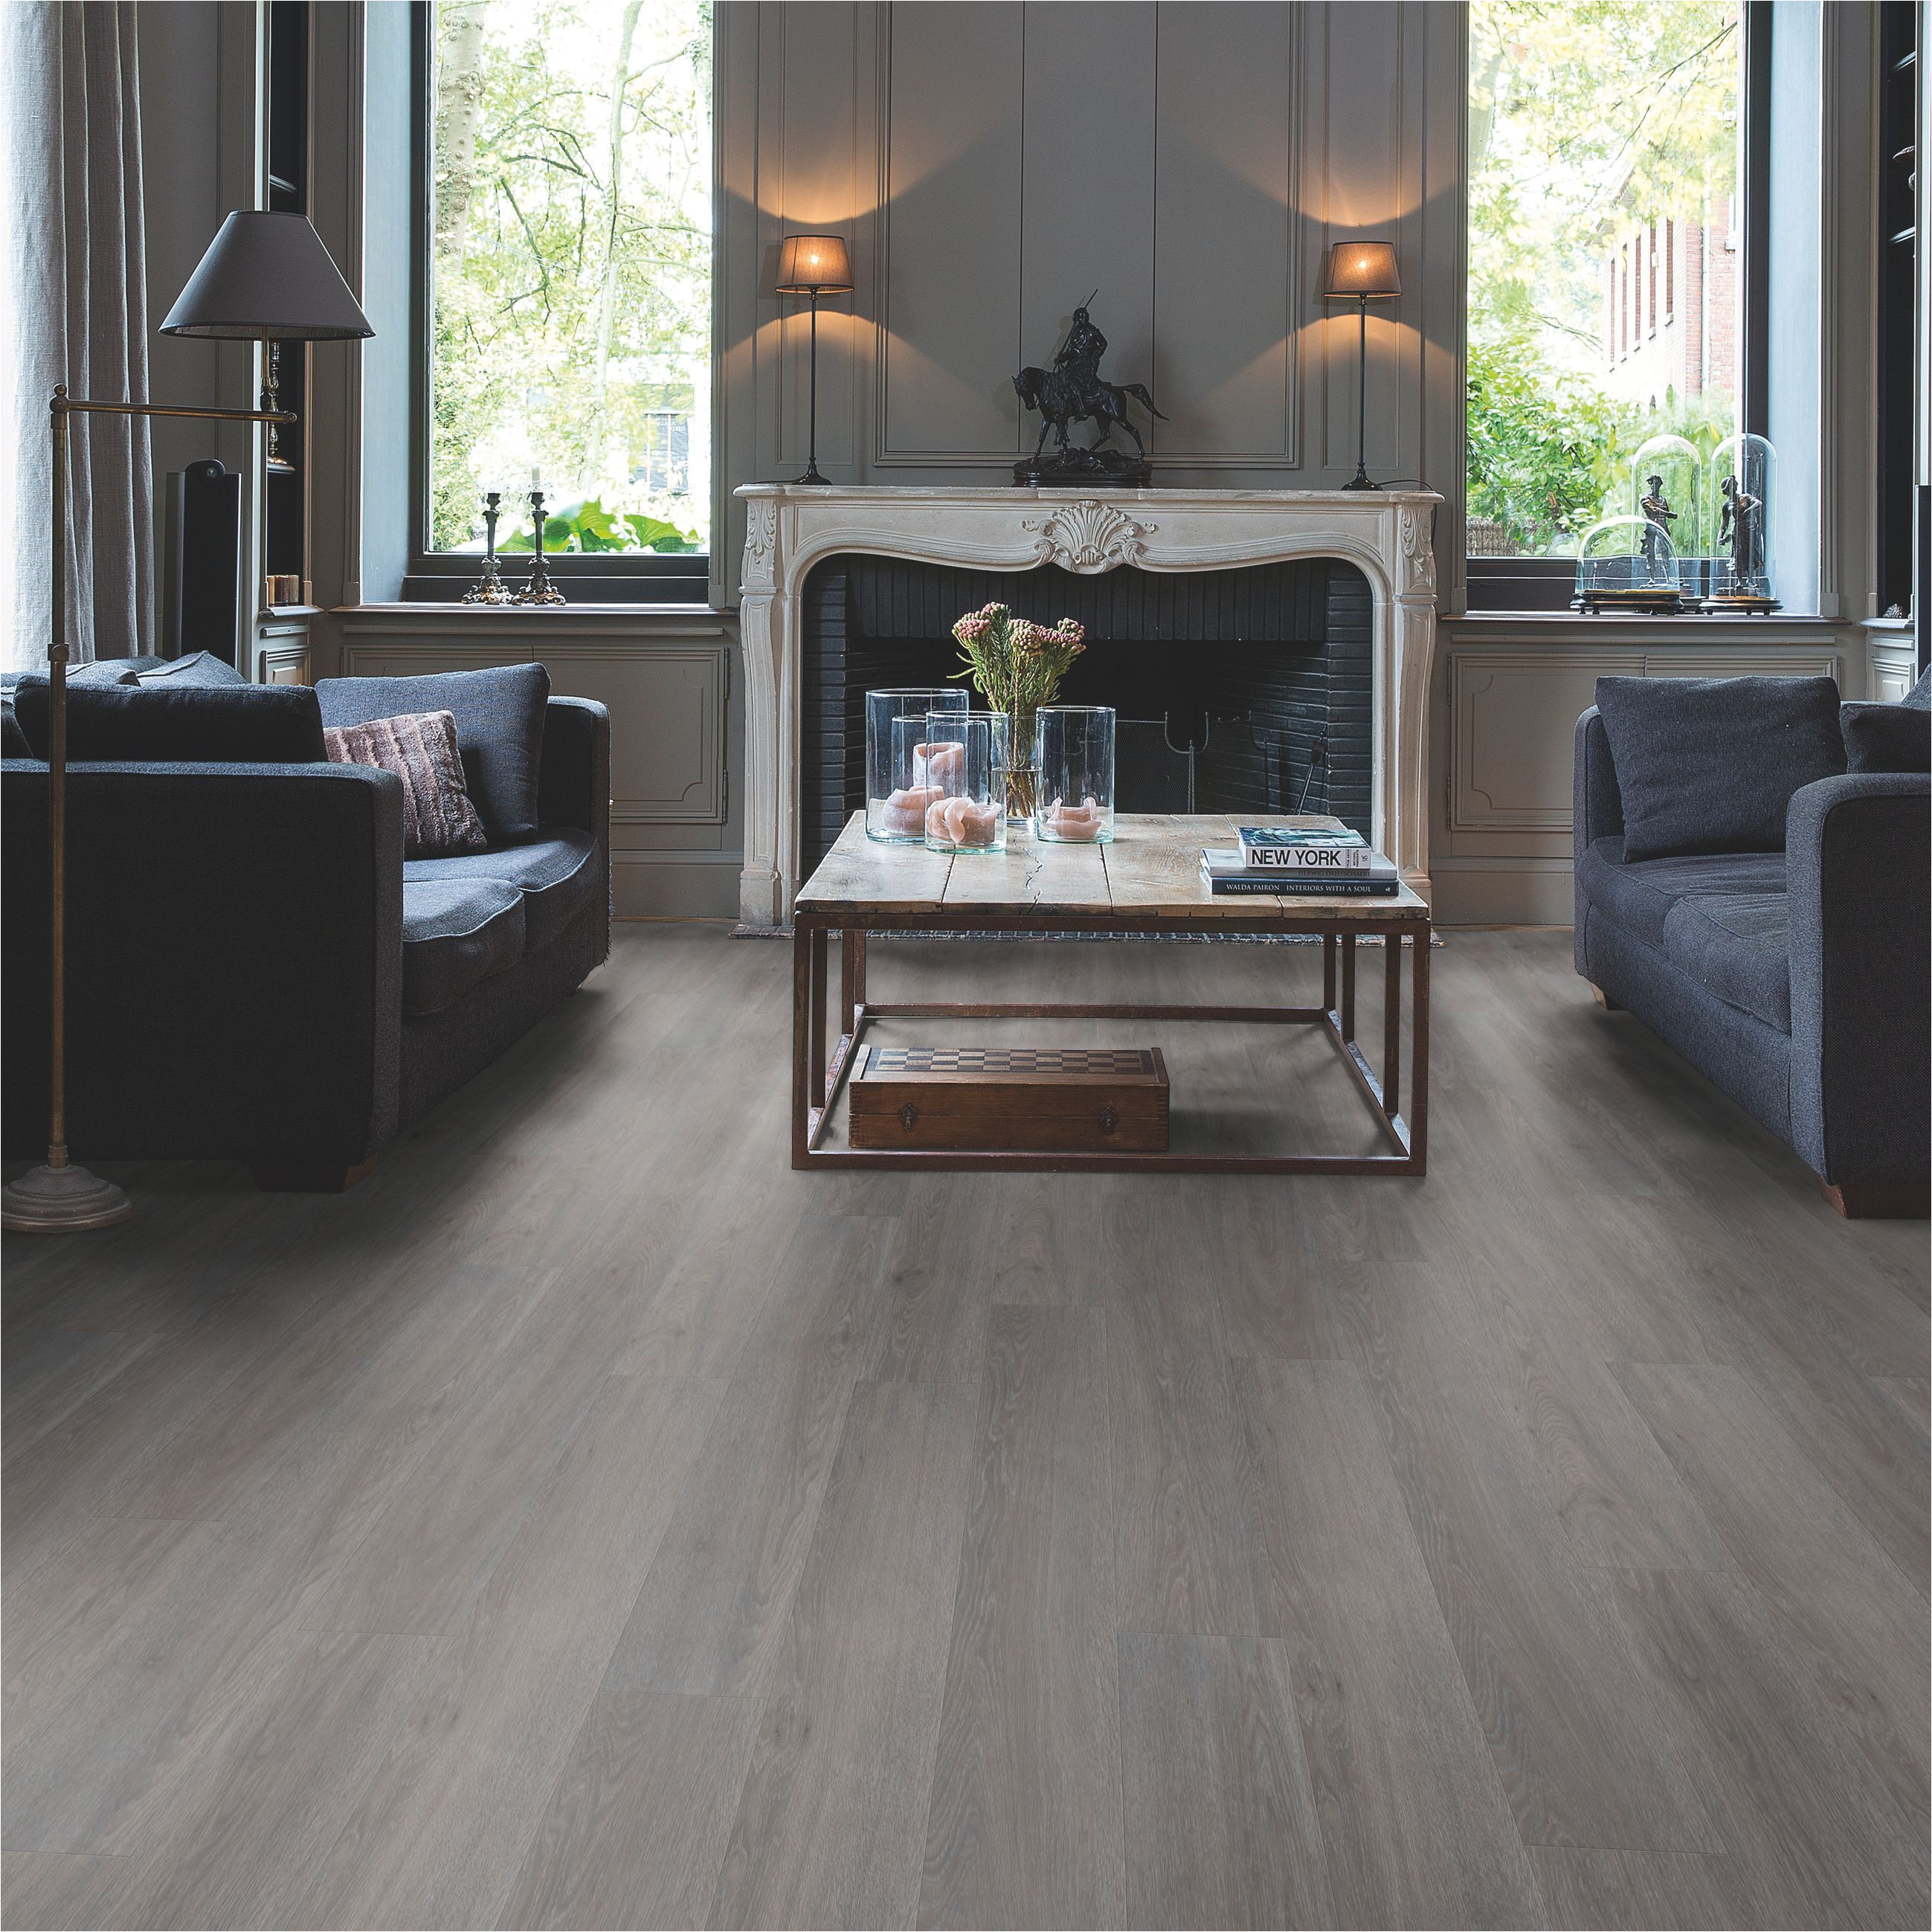 paso dark grey oak effect waterproof luxury vinyl flooring tile 2 105 ma pack departments diy at b q